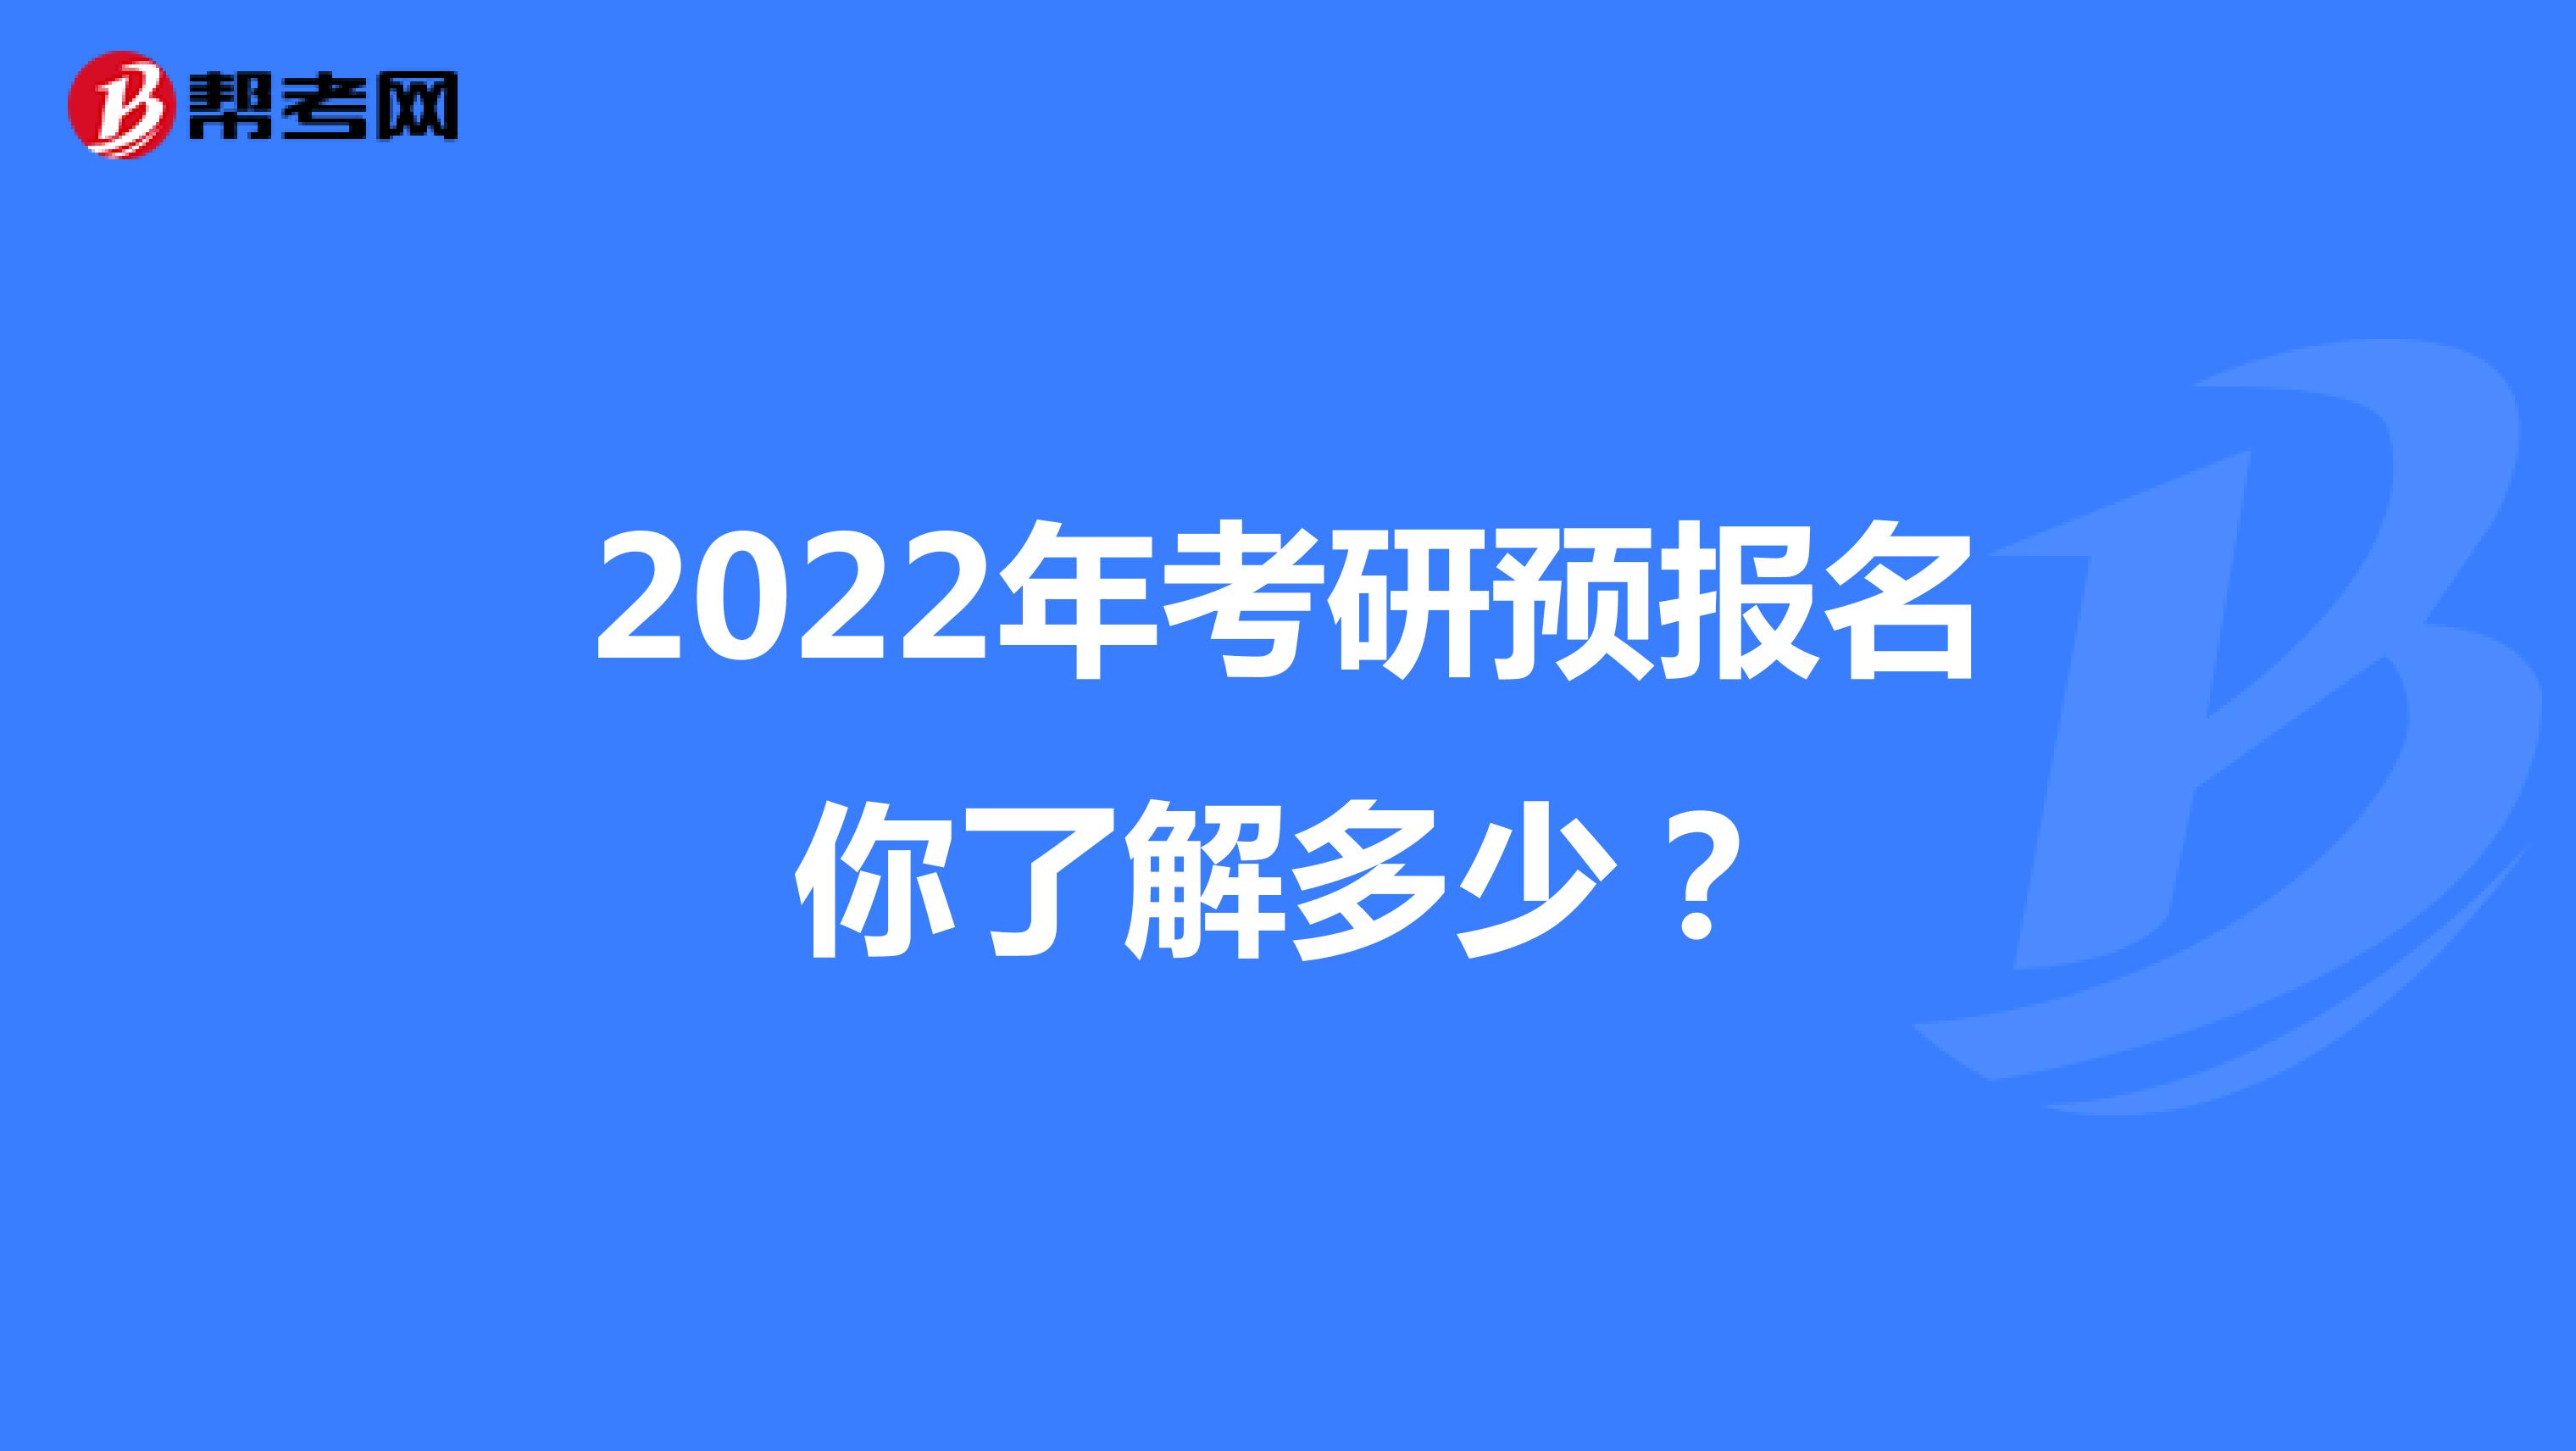 2022年考研预报名你了解多少？